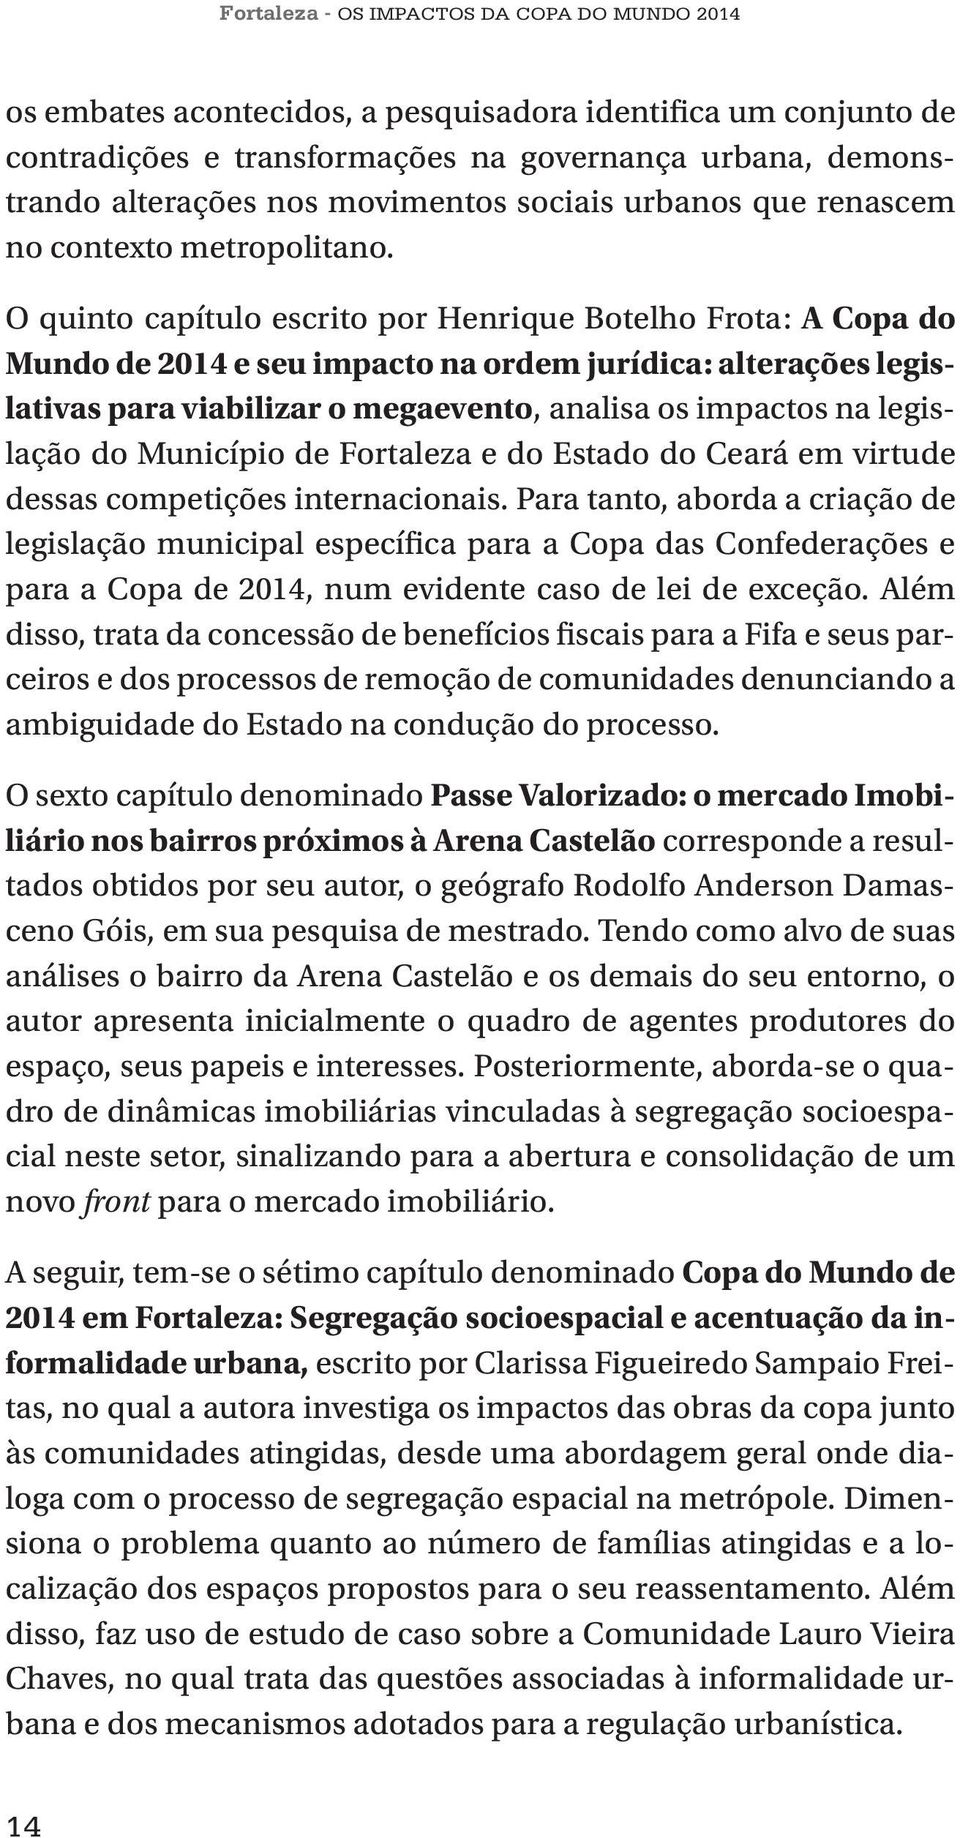 O quinto capítulo escrito por Henrique Botelho Frota: A Copa do Mundo de 2014 e seu impacto na ordem jurídica: alterações legislativas para viabilizar o megaevento, analisa os impactos na legislação